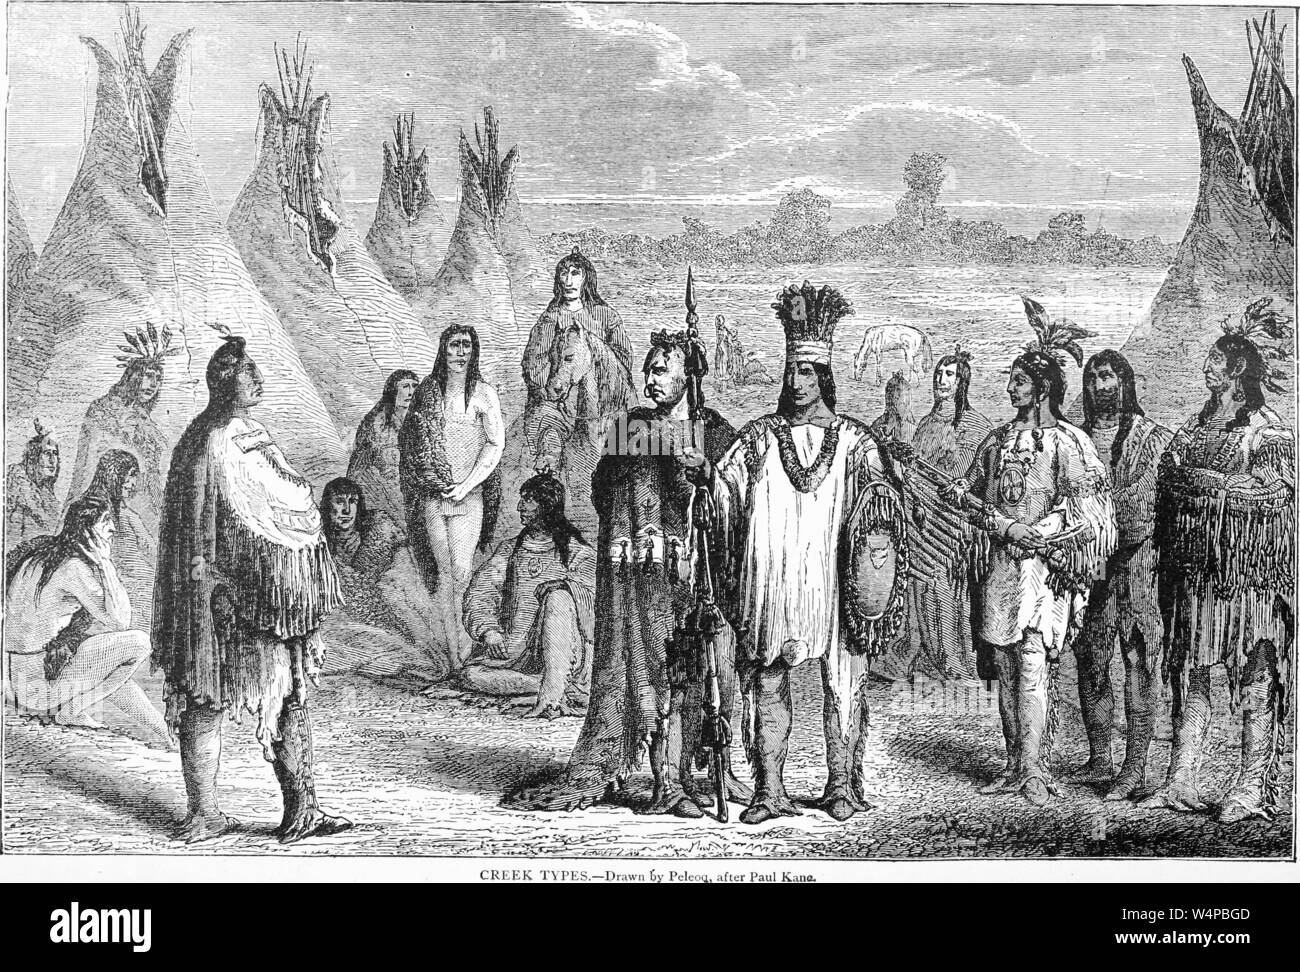 Eingravierte Zeichnung der Native American Creek indischen Stamm, aus dem Buch "ridpath Universal's Geschichte" von John Clark Ridpath, 1897. Mit freundlicher Genehmigung Internet Archive. () Stockfoto